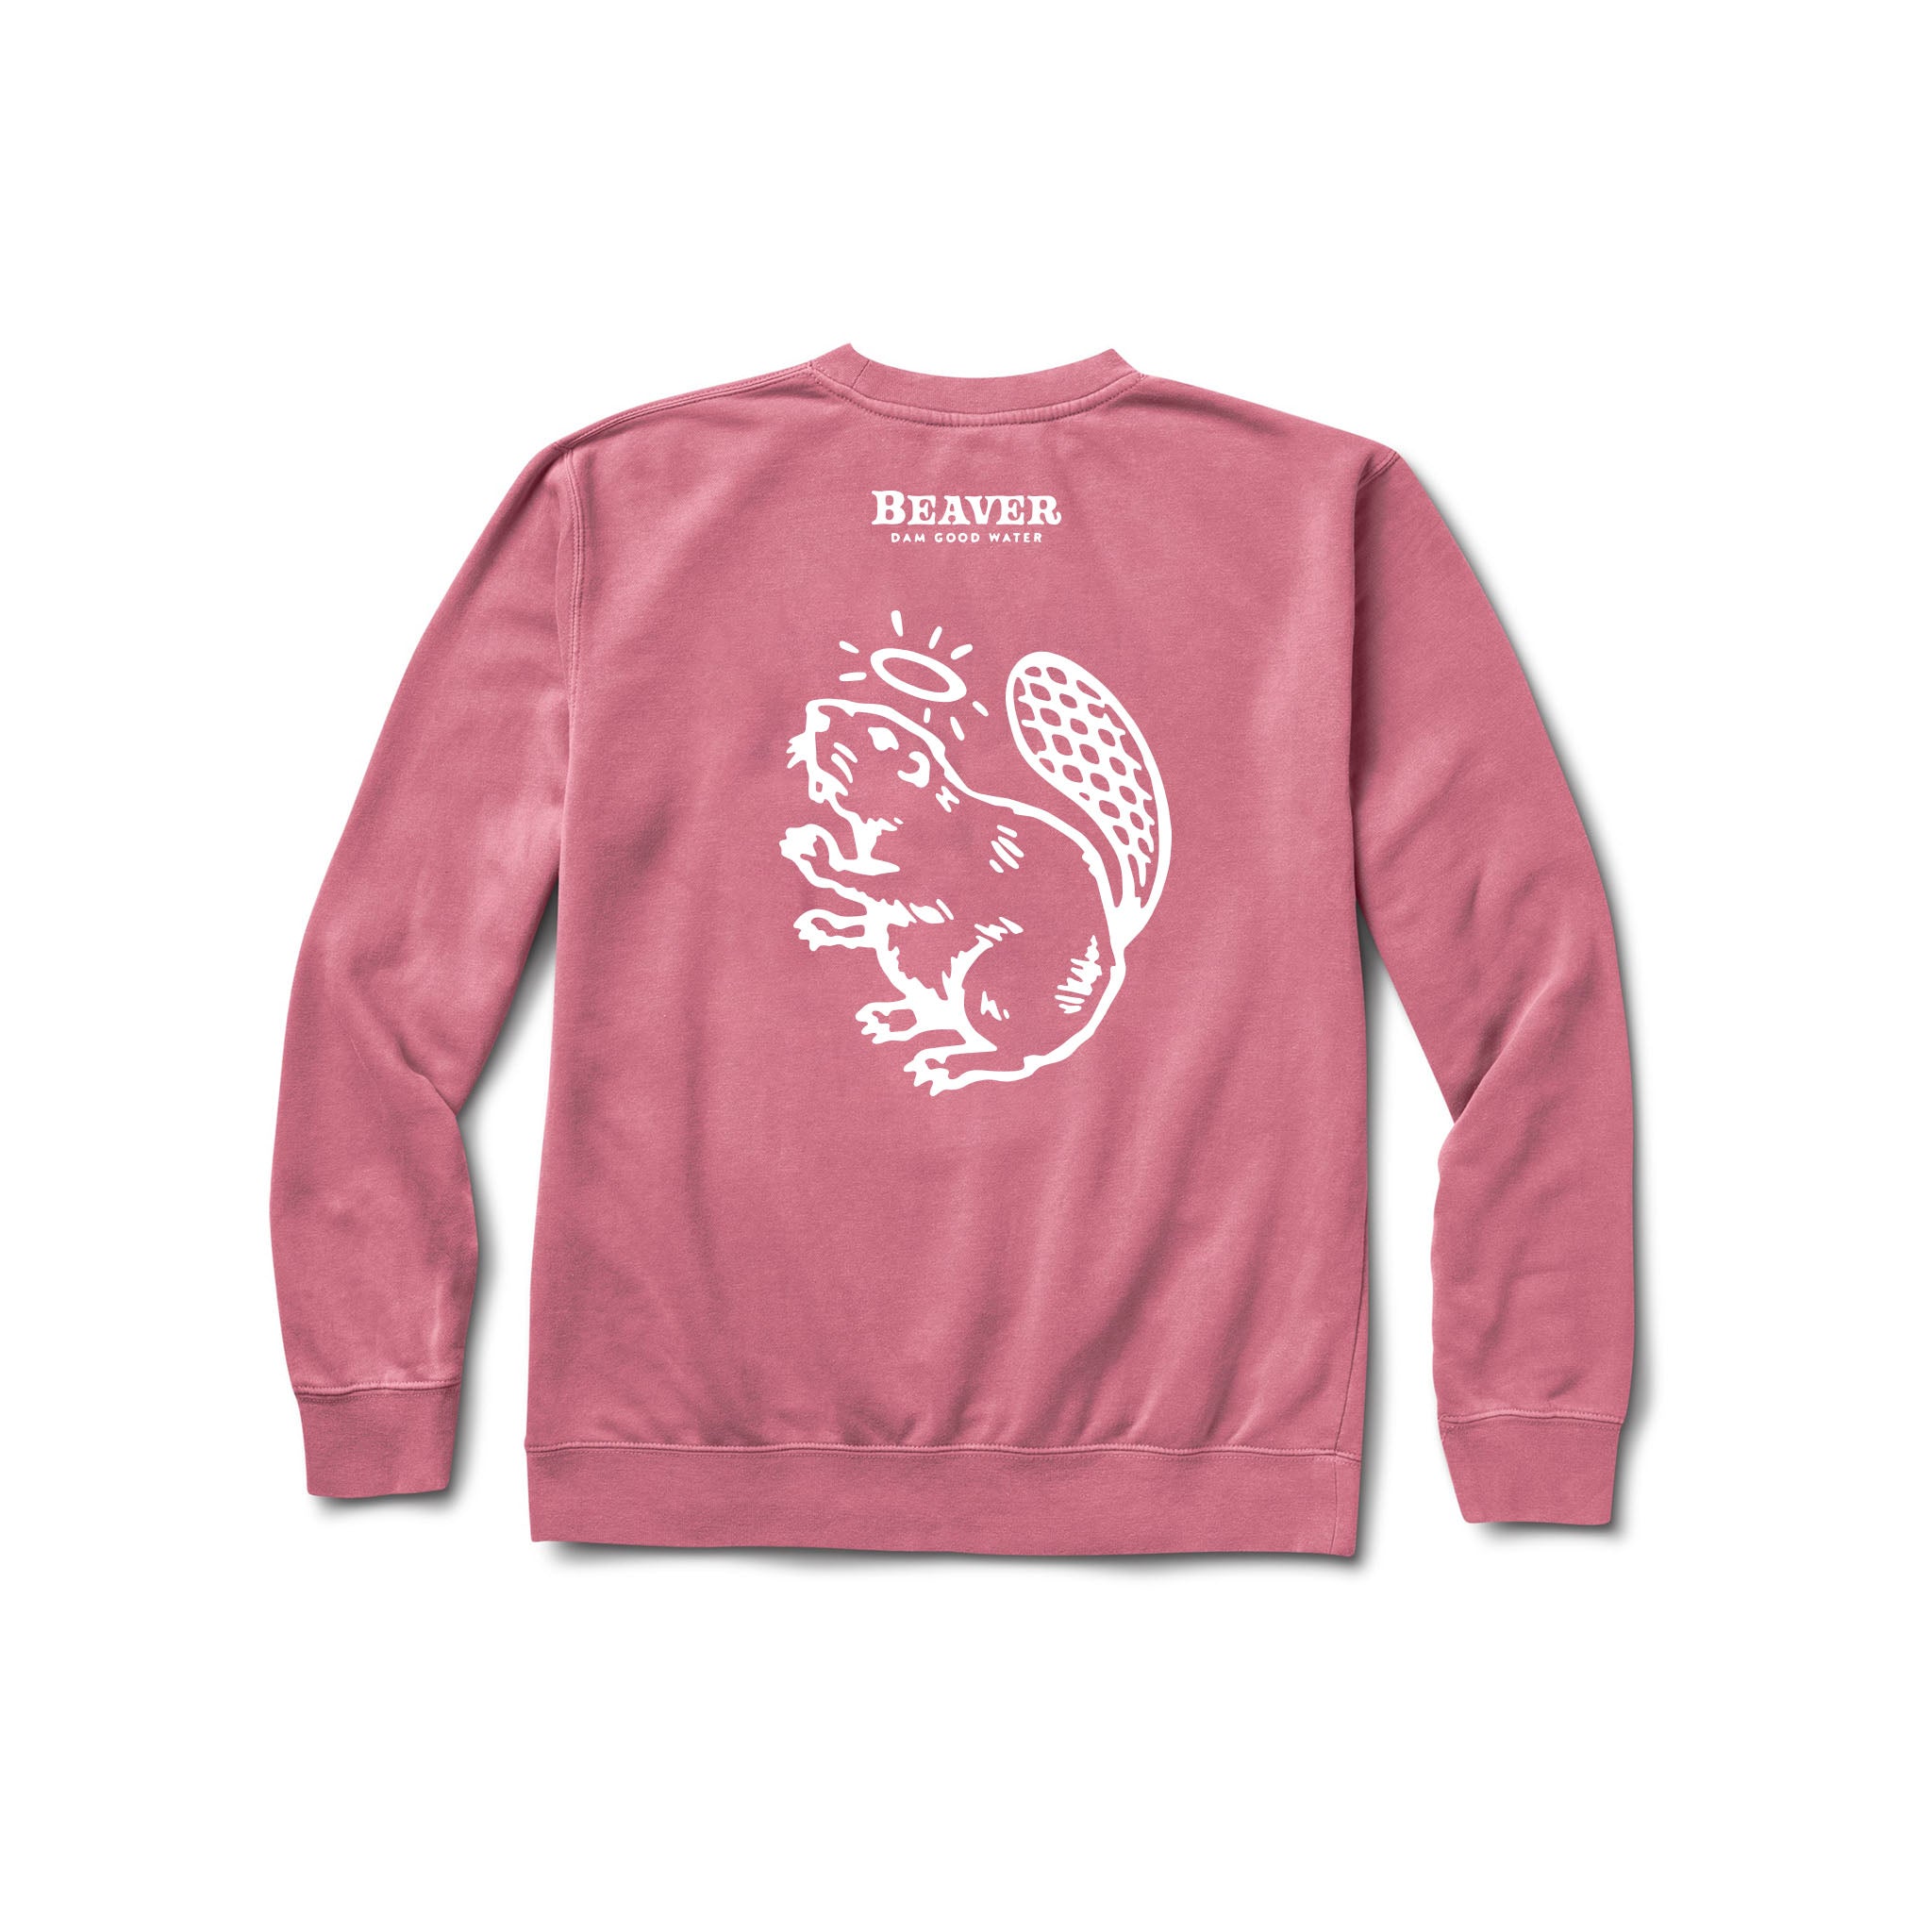 Support Boobs - Sweatshirt